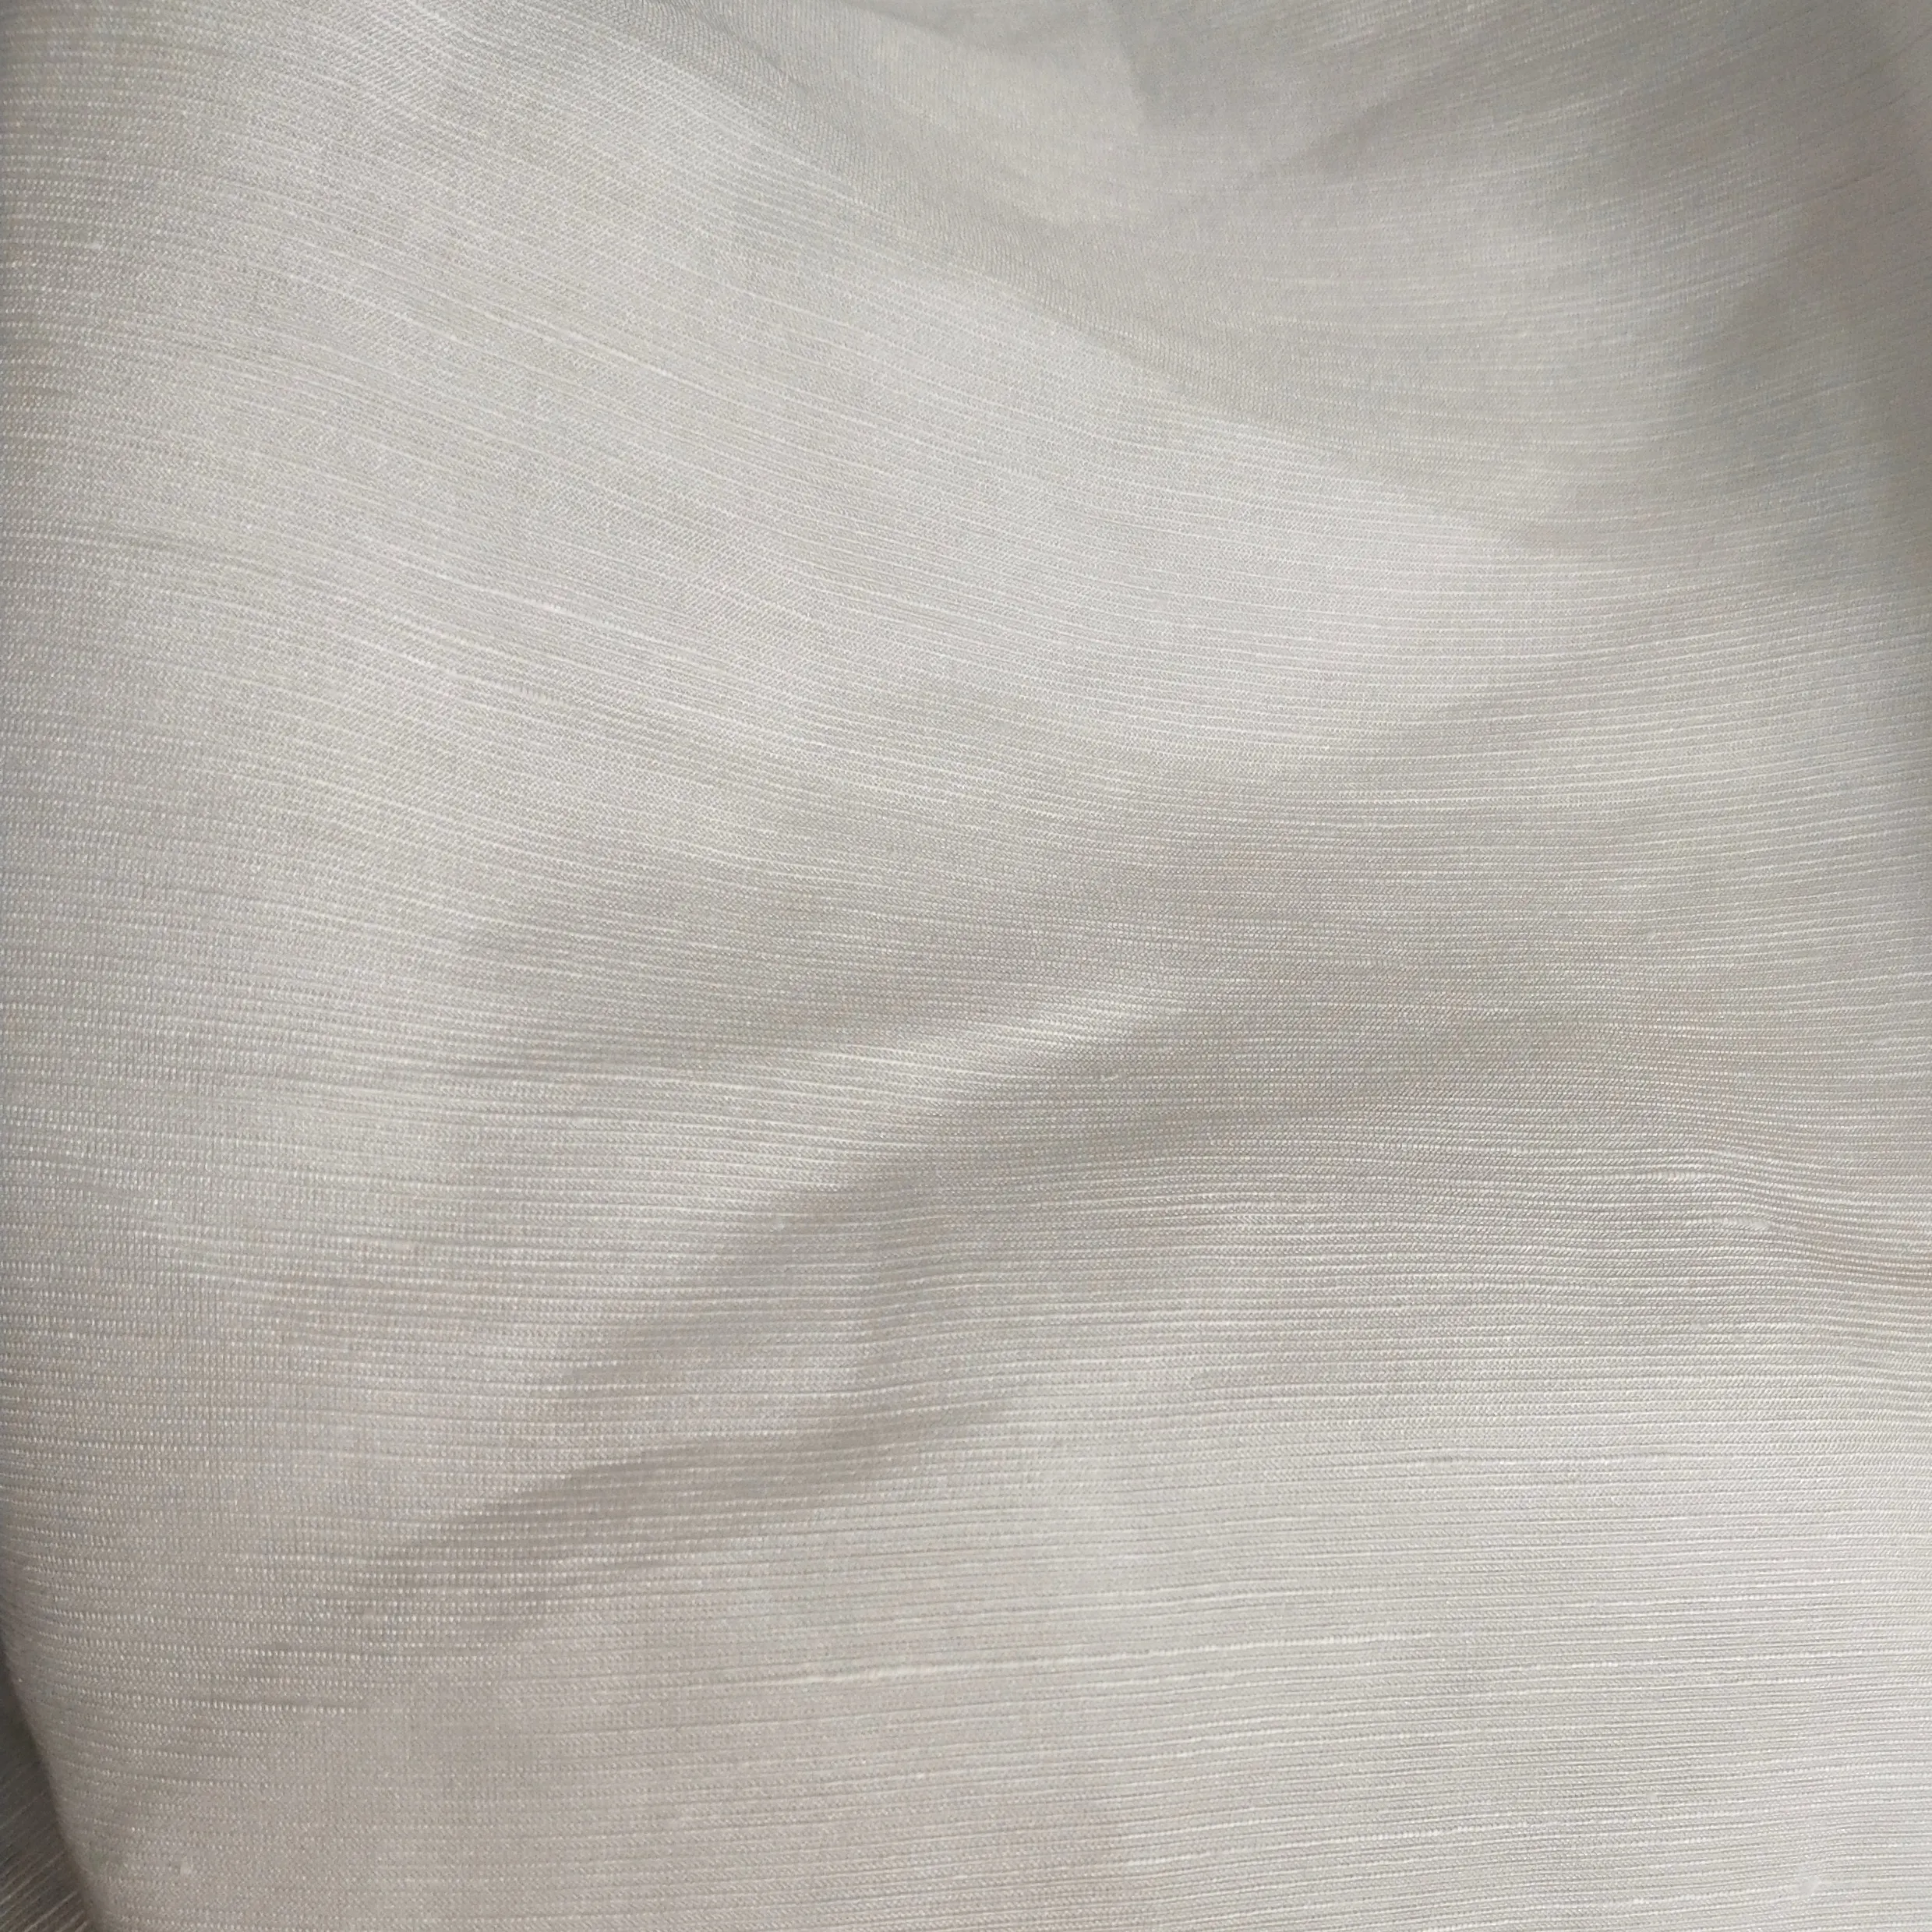 Tela de gasa de lino y seda China, color blanco para imprimir y teñir